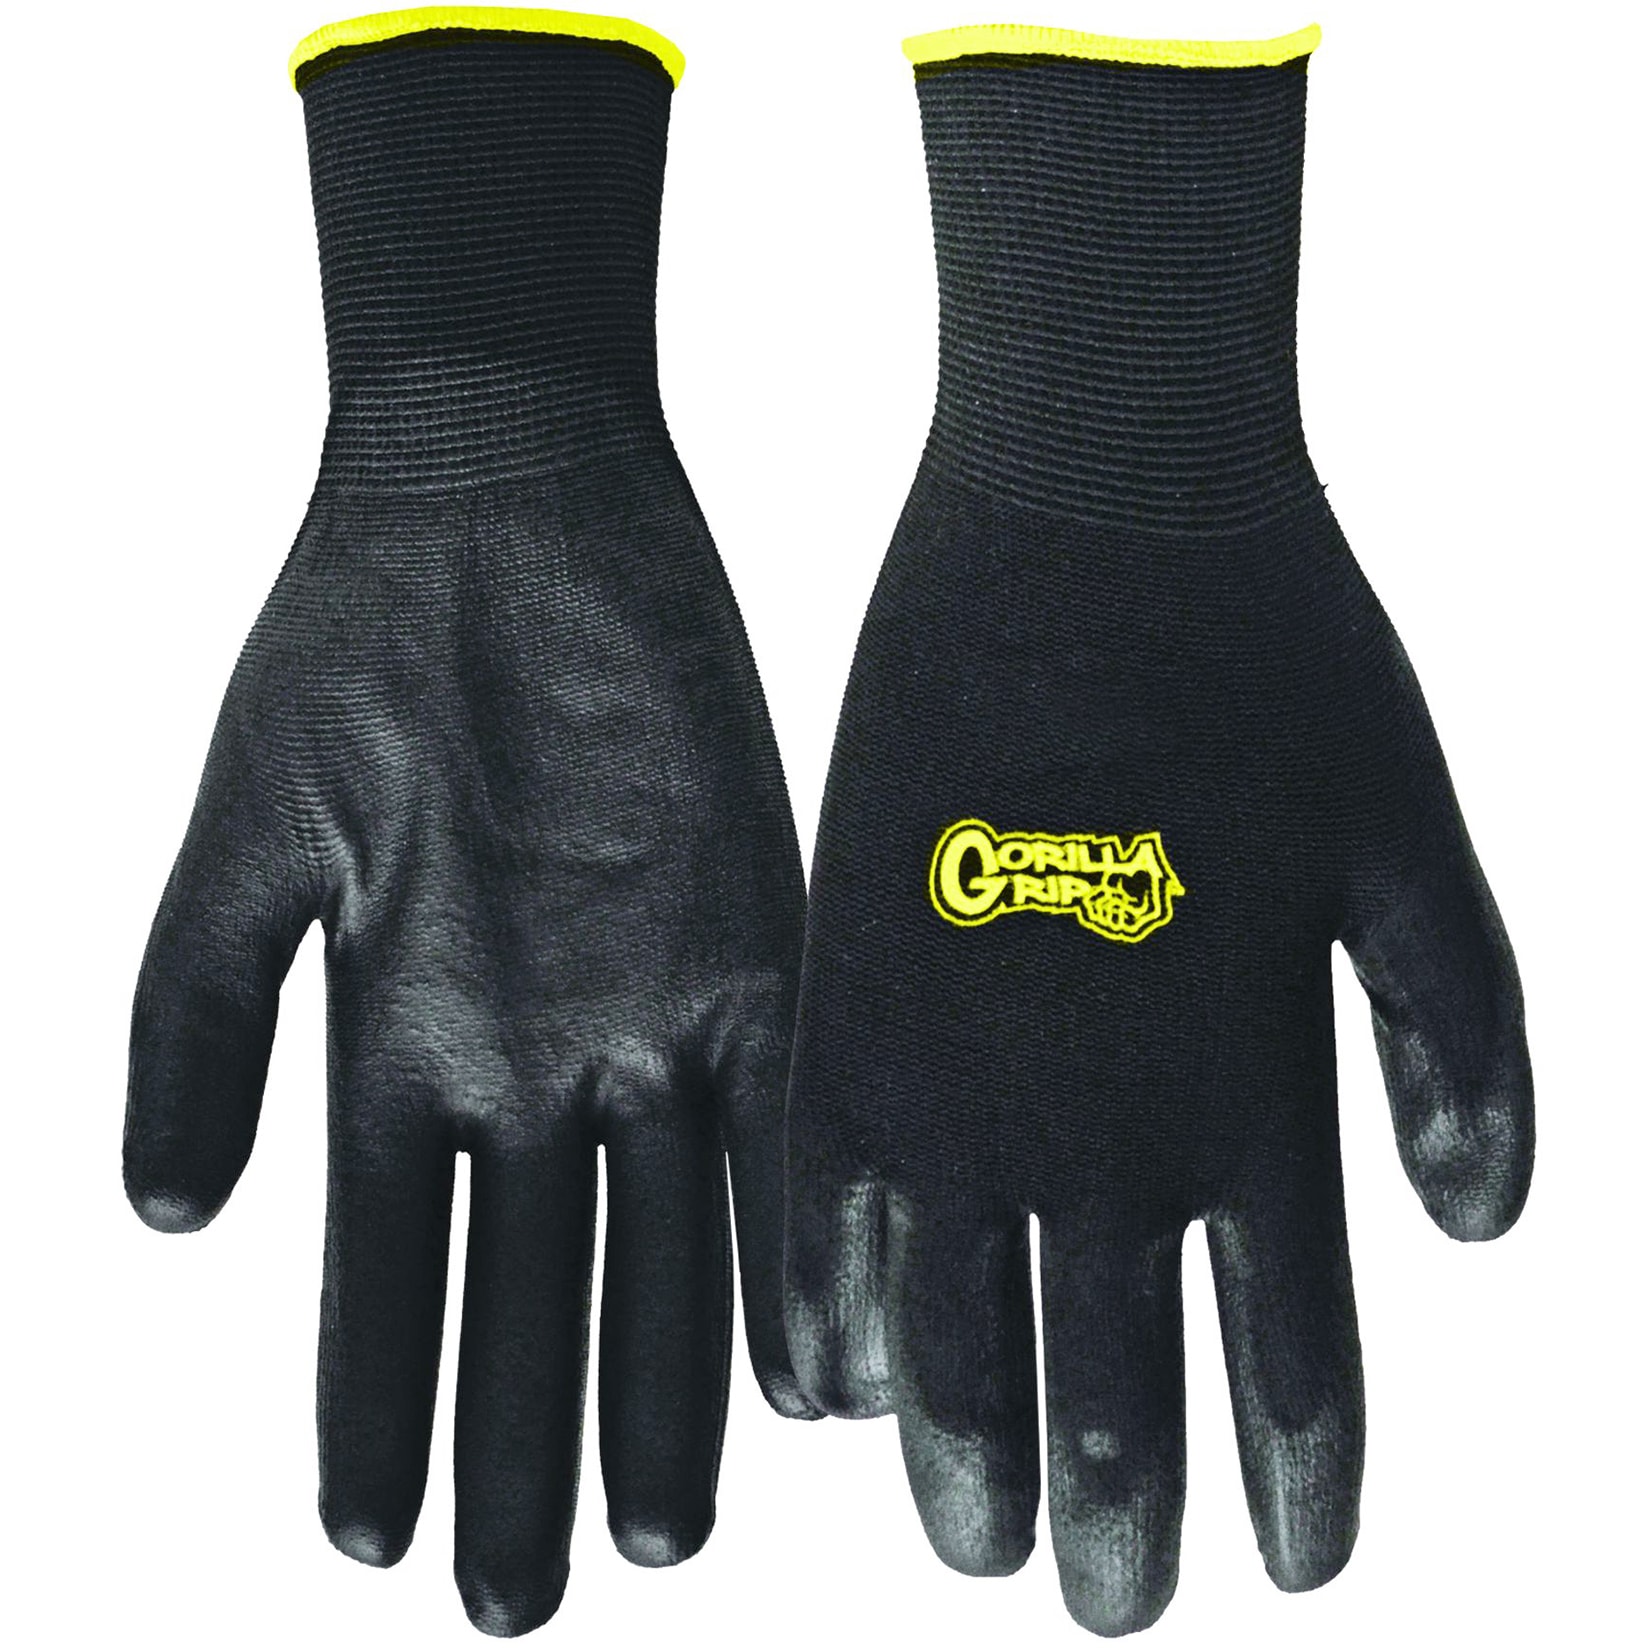 Never Slip Outdoors Gloves from Gorilla Grip